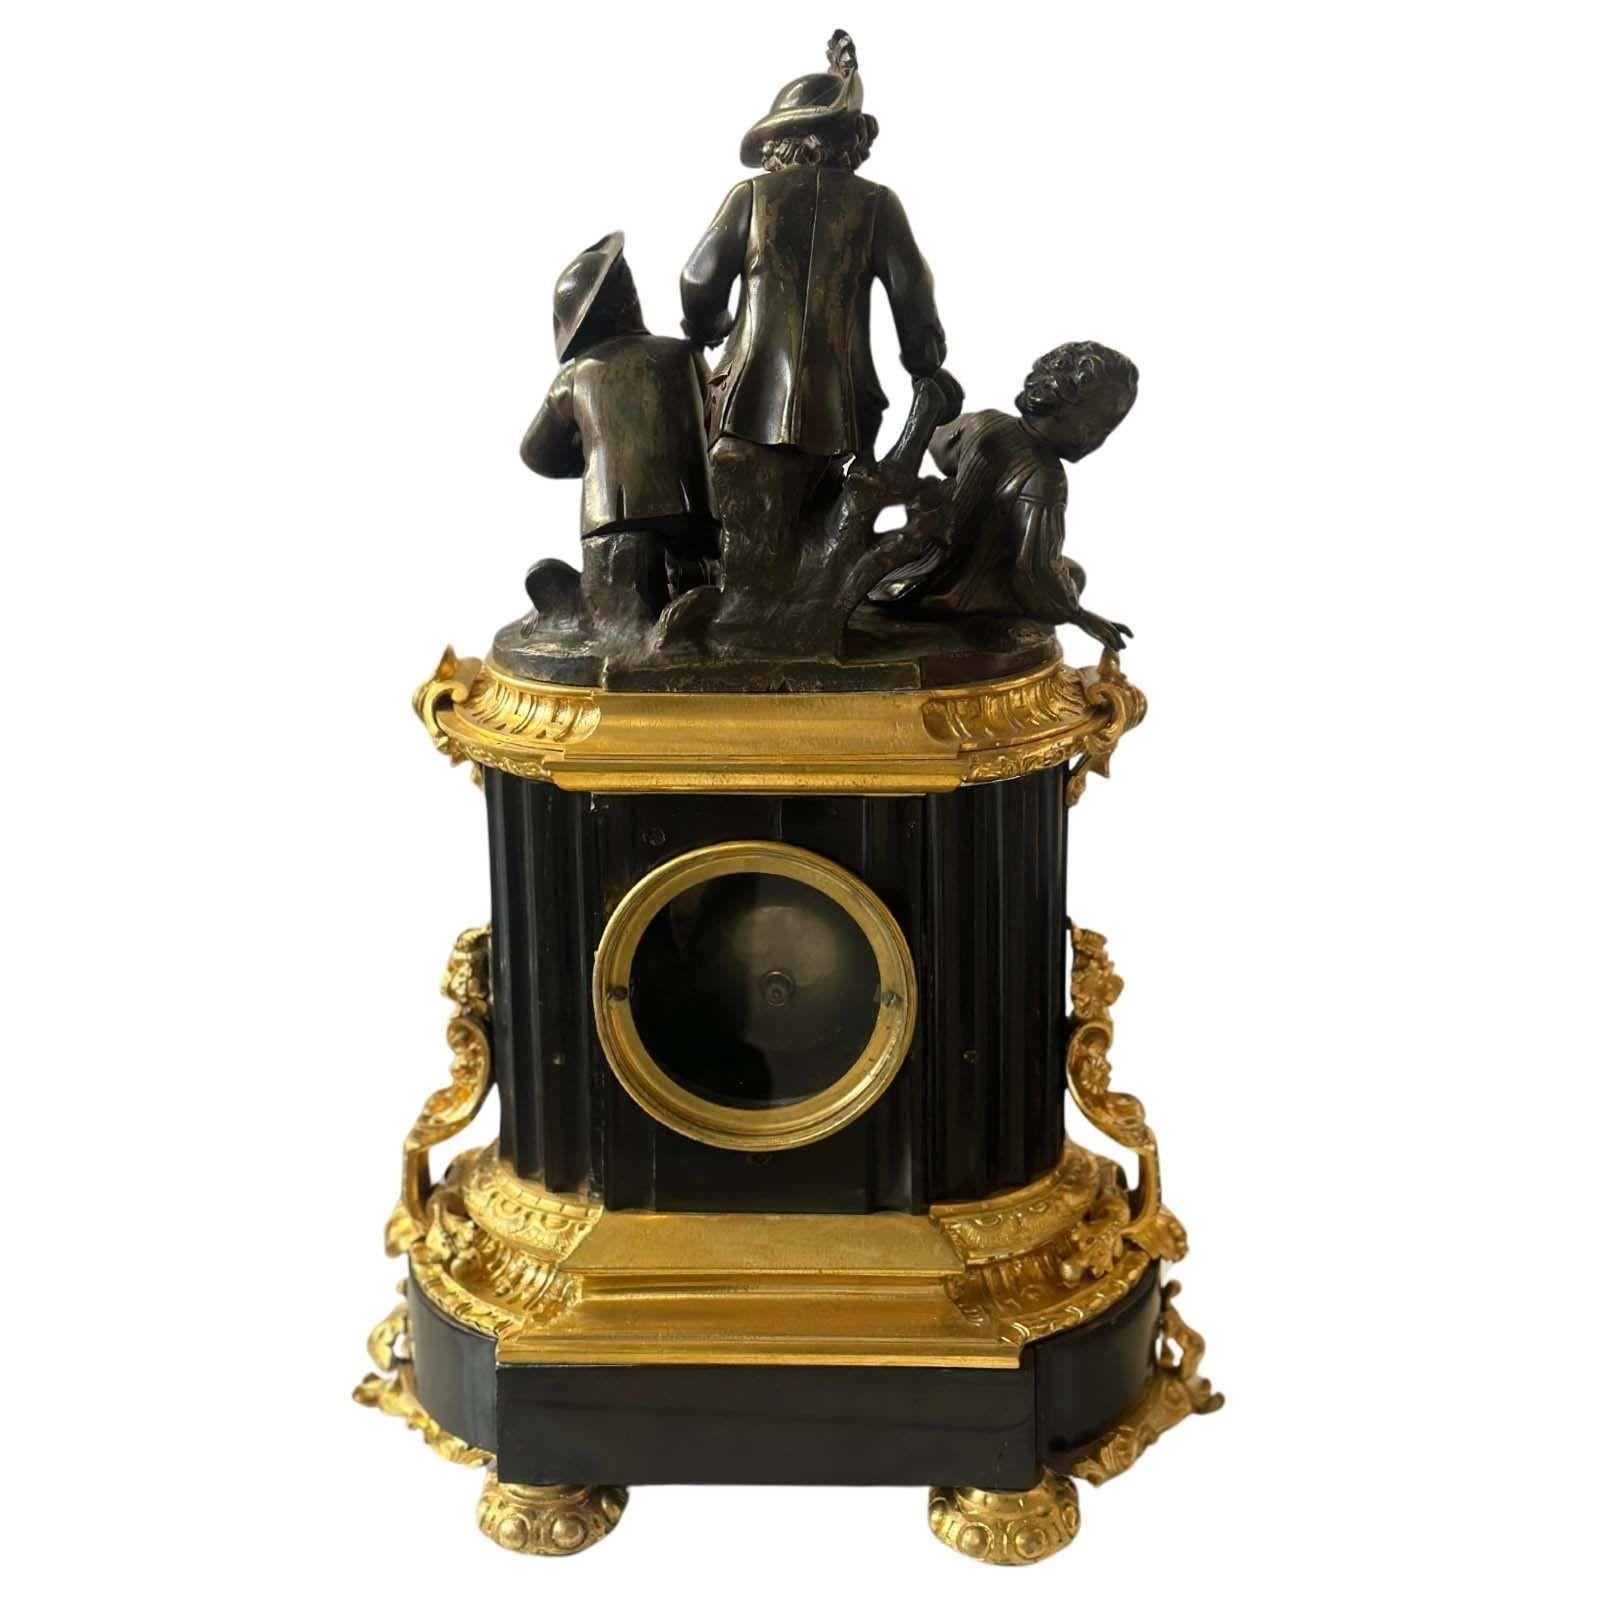 Pendule sculpturale en bronze patiné et d'or de F. Dumouchel, soutenue par une base en marbre noir. Fabriqué à la fin du XIXe siècle ; décoré de motifs feuillagés sur tout le pourtour et d'une représentation de trois enfants sur le